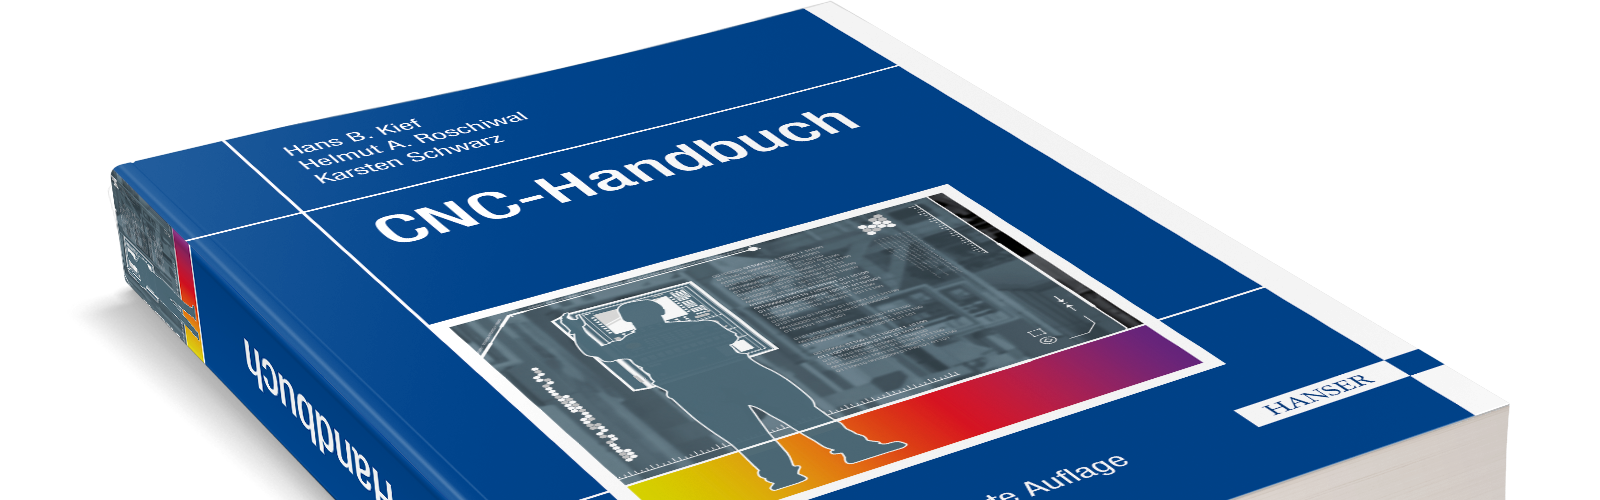 Das neue CNC Handbuch